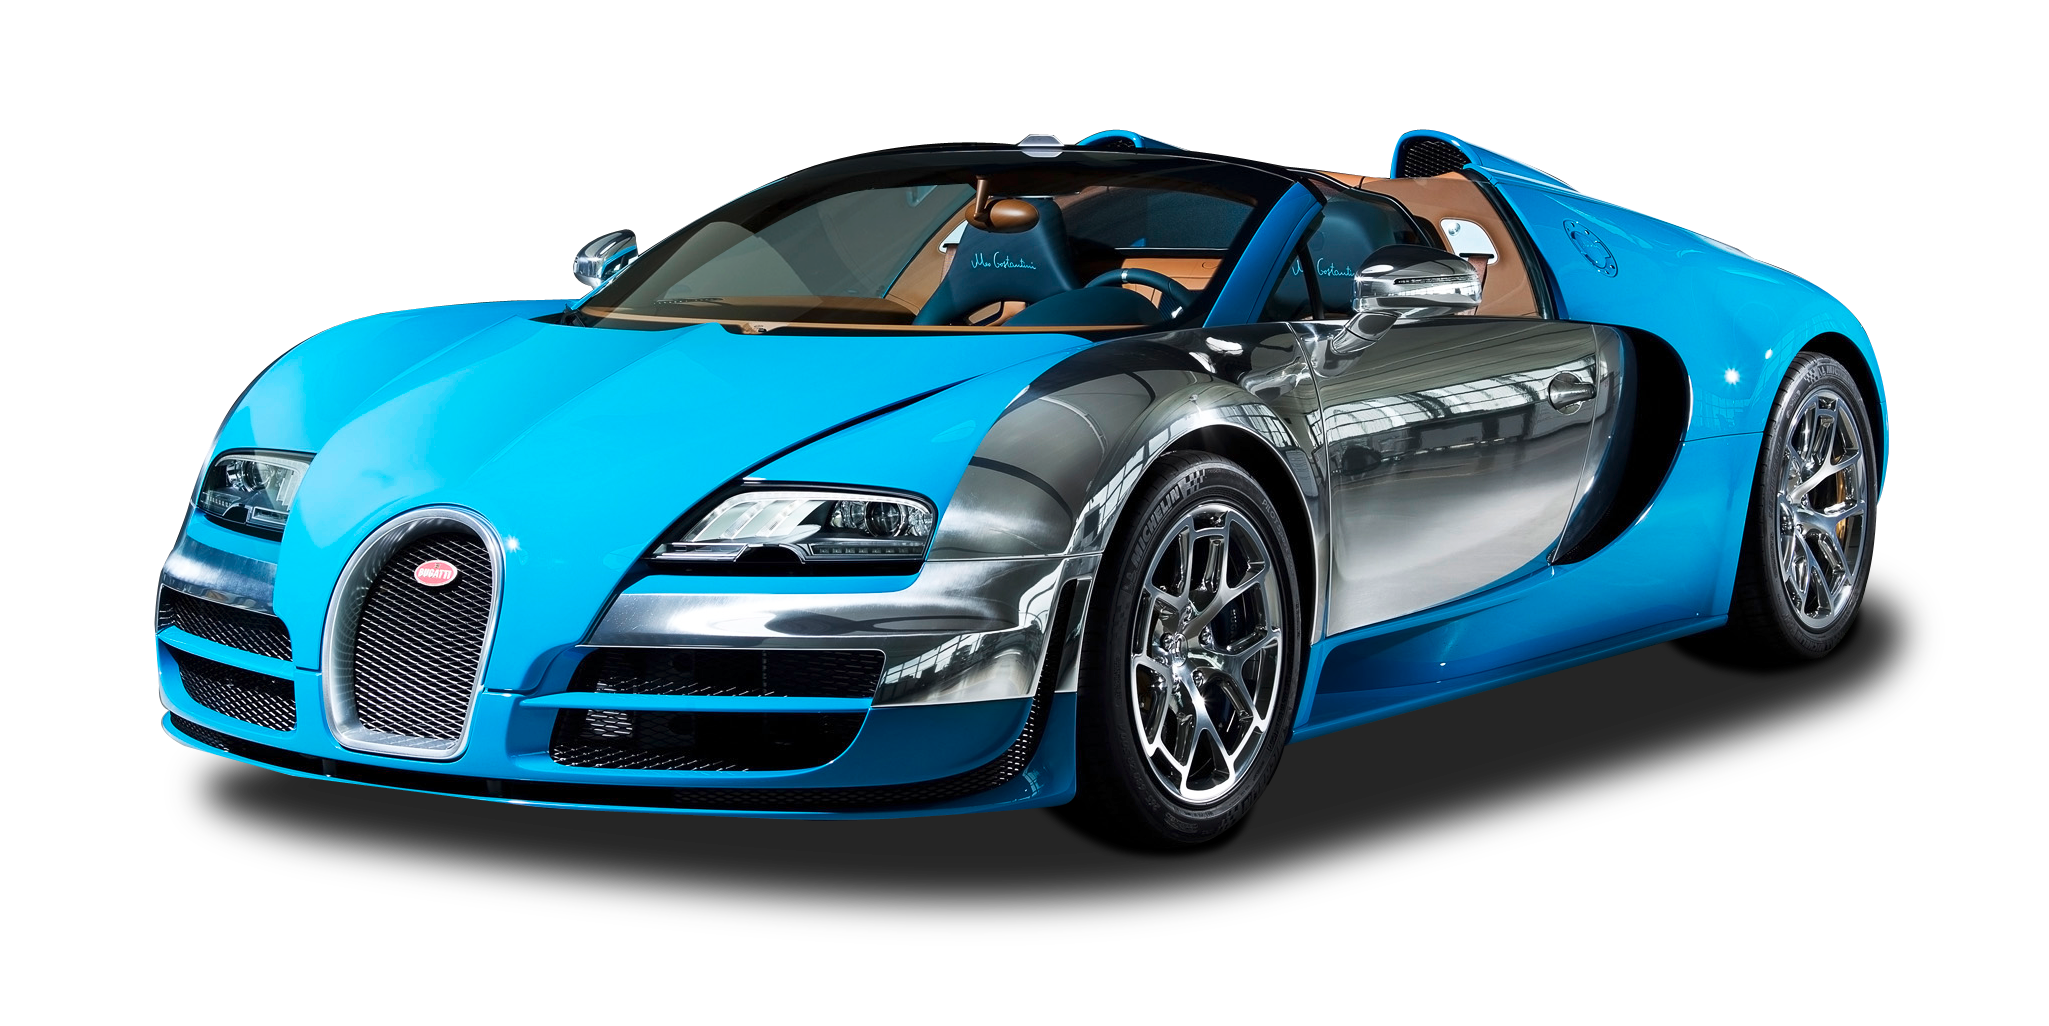 Bugatti Veyron Grand Sport Vitesse Meo Costantini Car Png Image   Pngpix - Bugatti Veyron, Transparent background PNG HD thumbnail